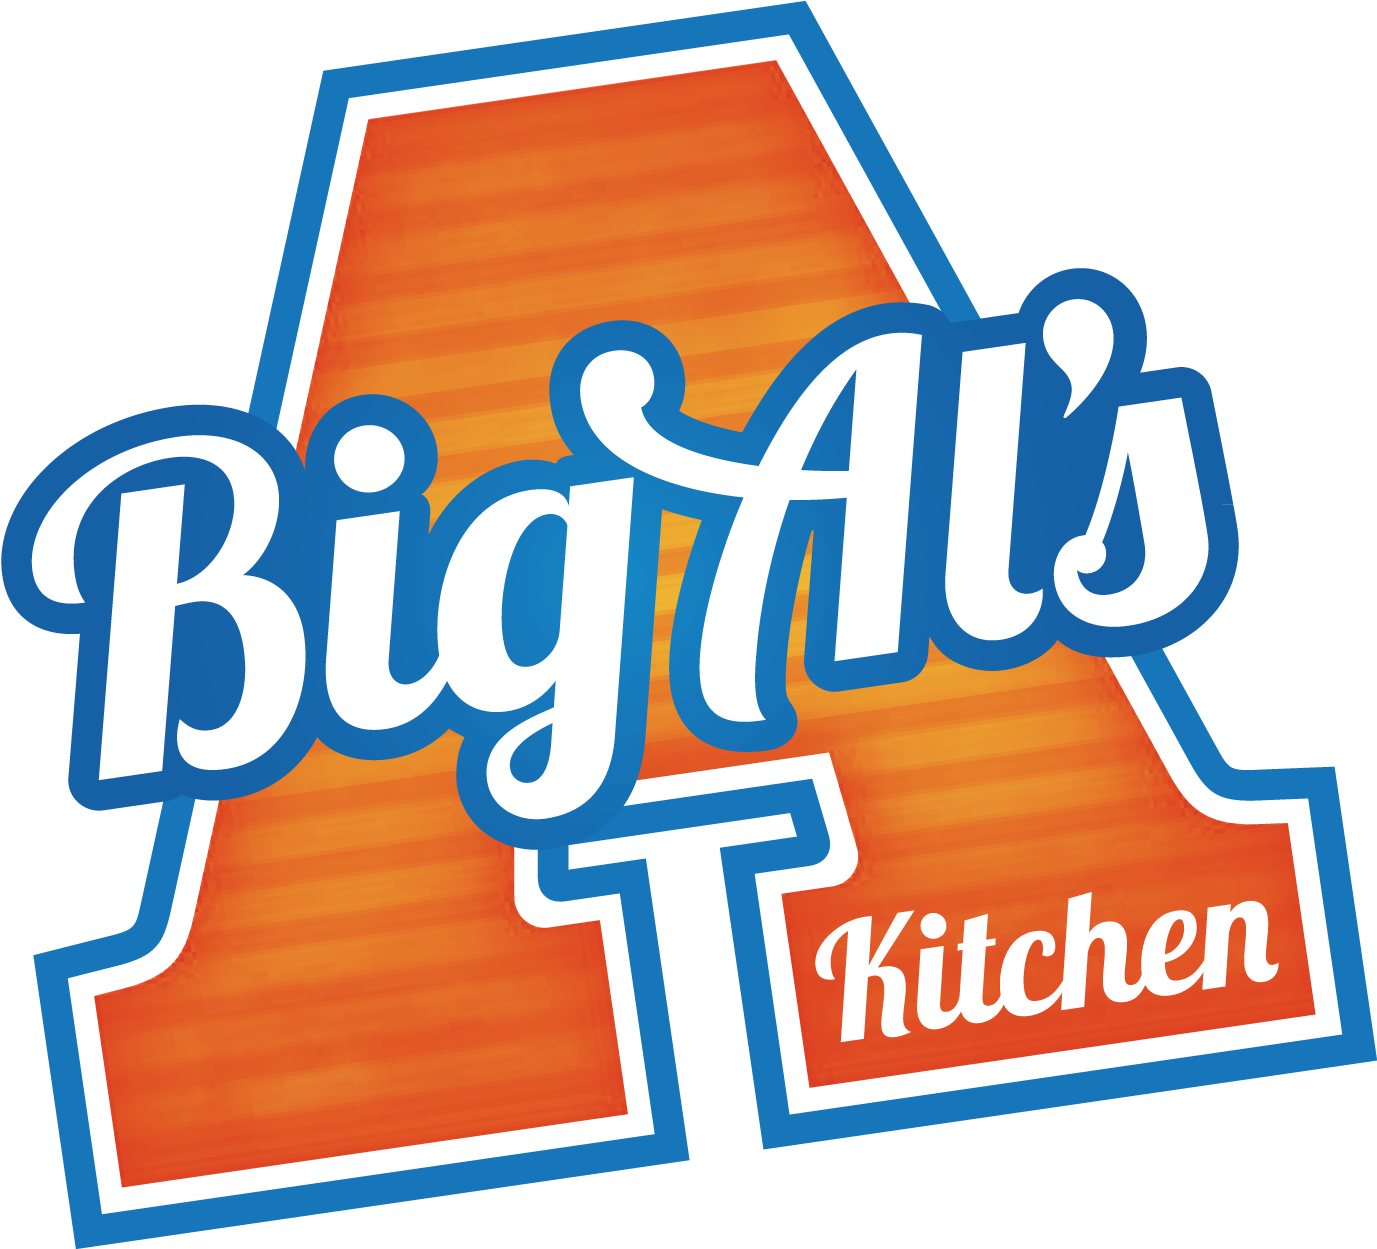 Big Als New Logo Without Background - Big Al's Kitchen 4 Crispy Chicken 380g (1385x1248)